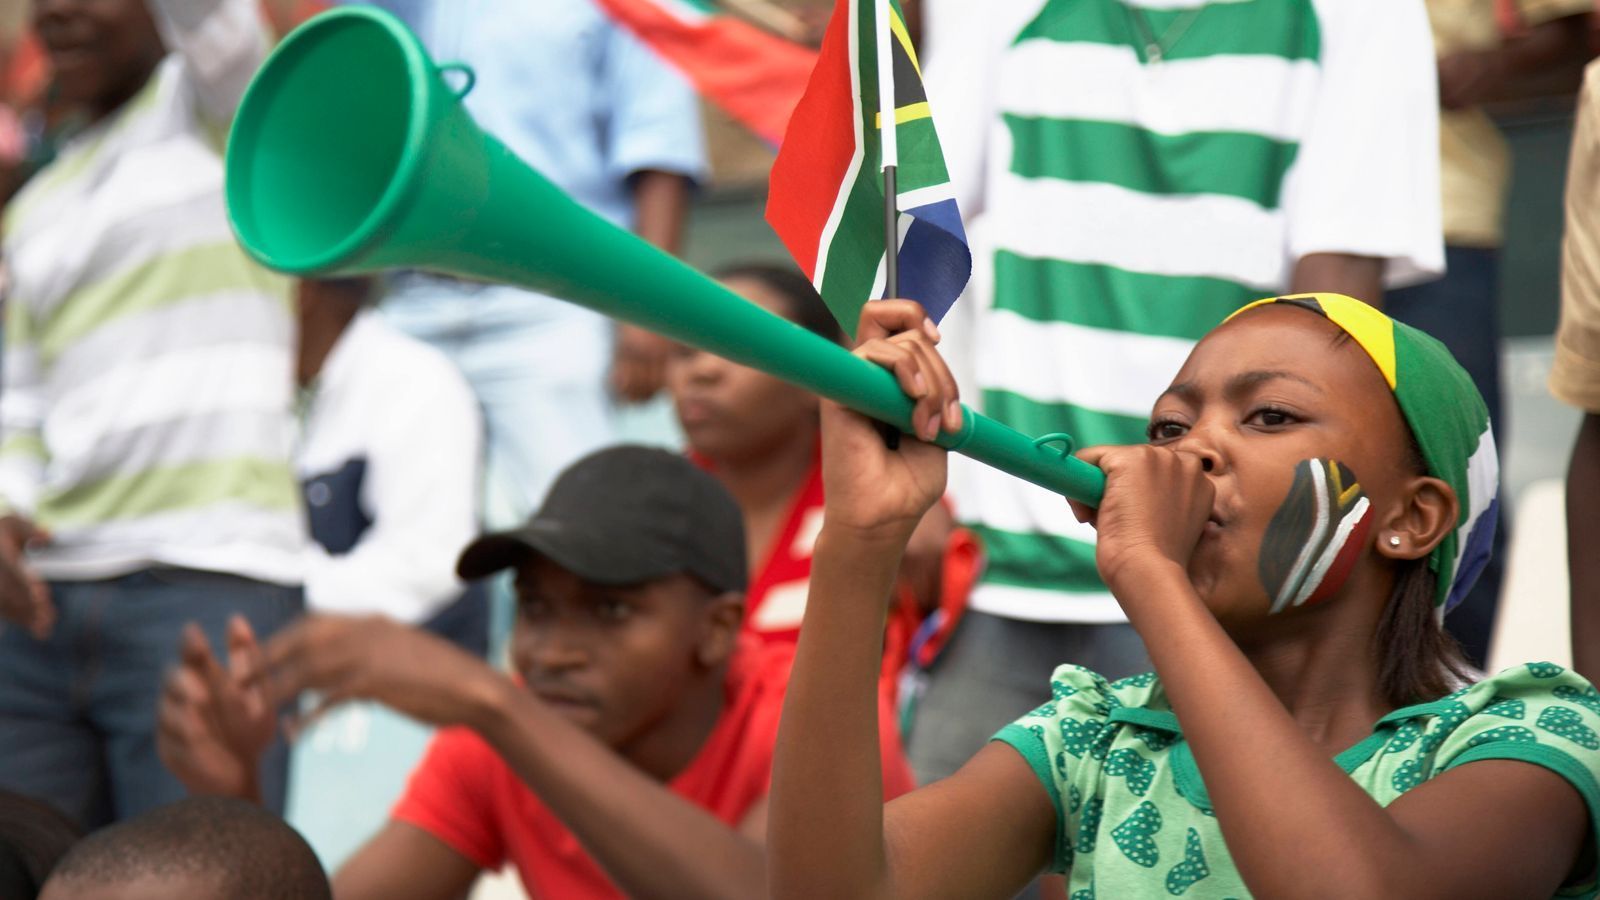 
                <strong>Vuvuzela</strong><br>
                Eine Vuvuzela (wer kennt sie noch?) brauchen die Galatasaray-Fans für die Atmosphäre in ihrem Stadion nicht. Die Tröte, die durch die WM 2010 in Südafrika zweifelhafte Berühmtheit erlangte, kommt je nach Abstand auf gut 120 Dezibel.
              